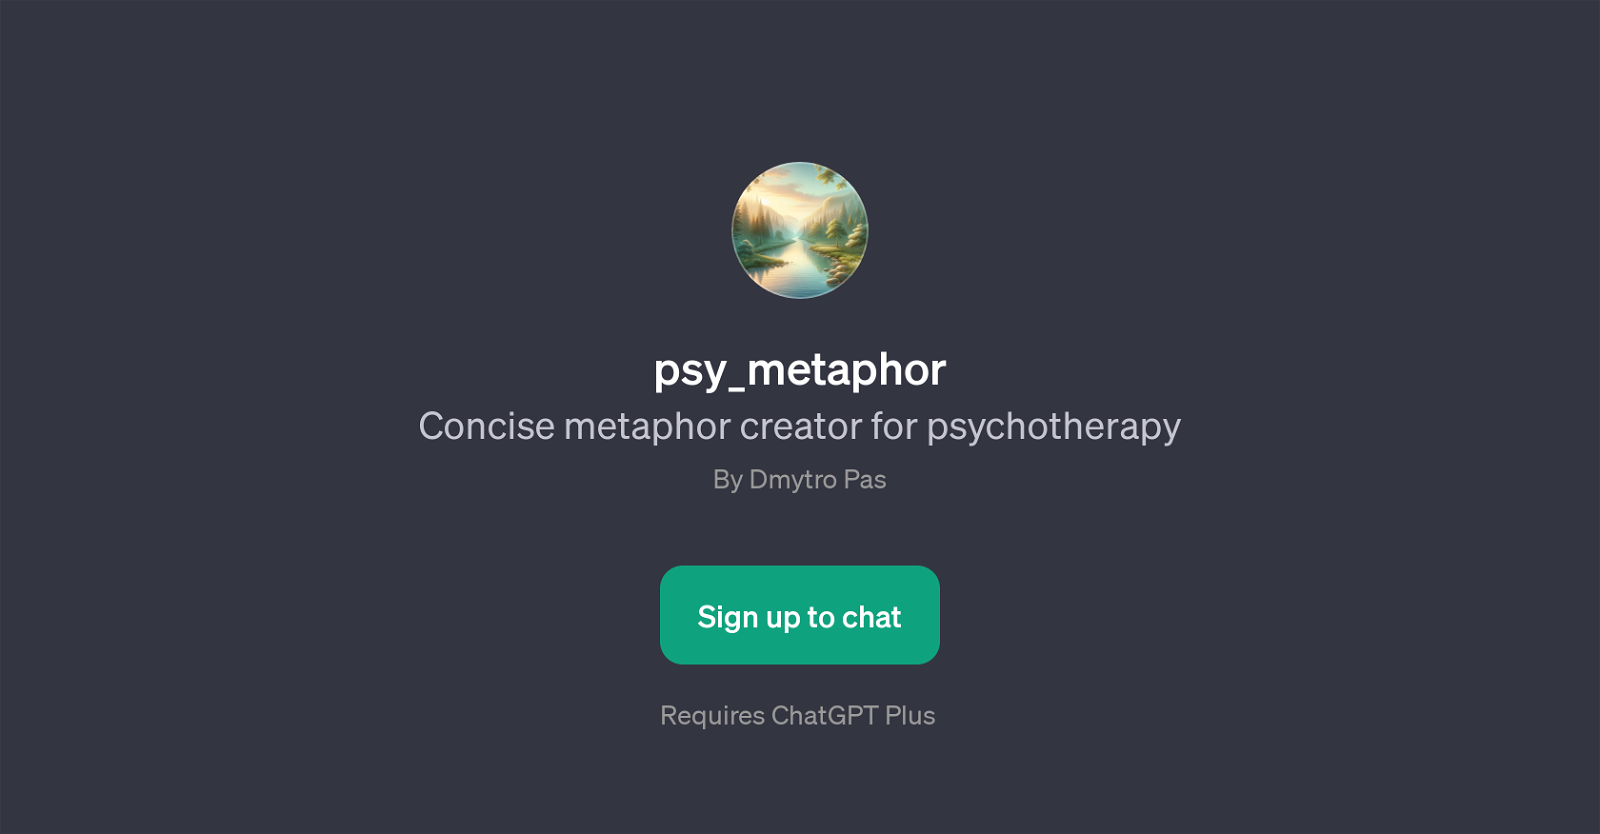 psy_metaphor website